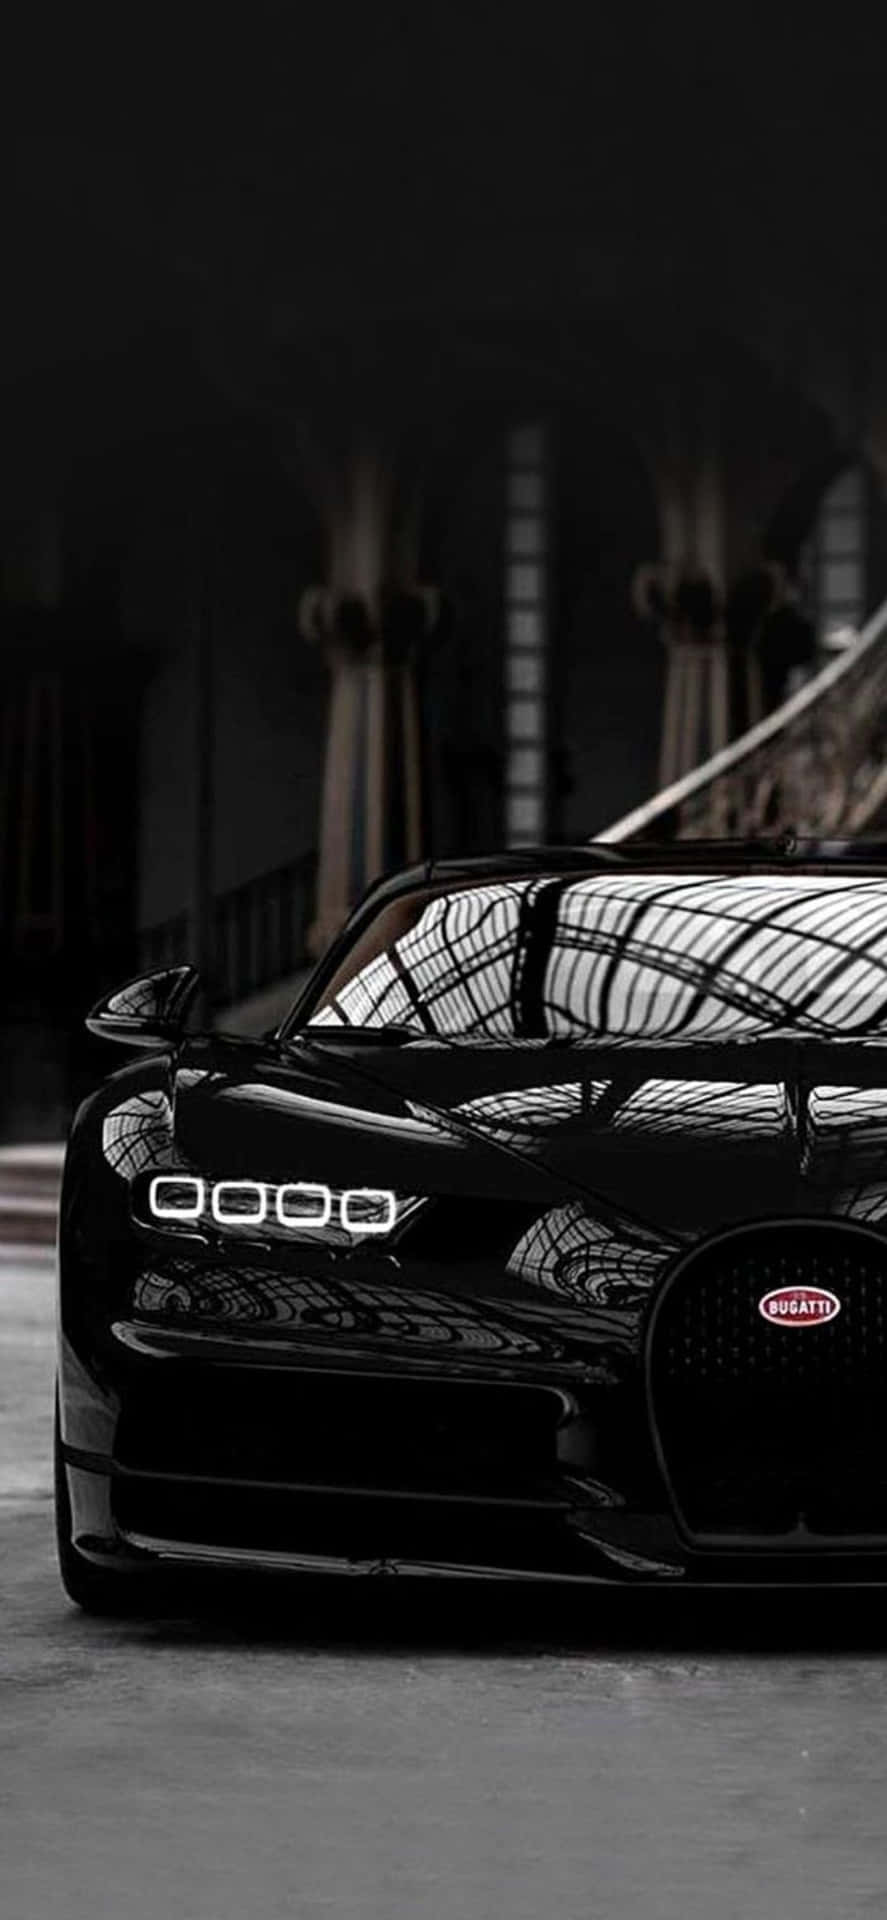 Estiloclásico De Bugatti En El Iphone Xs